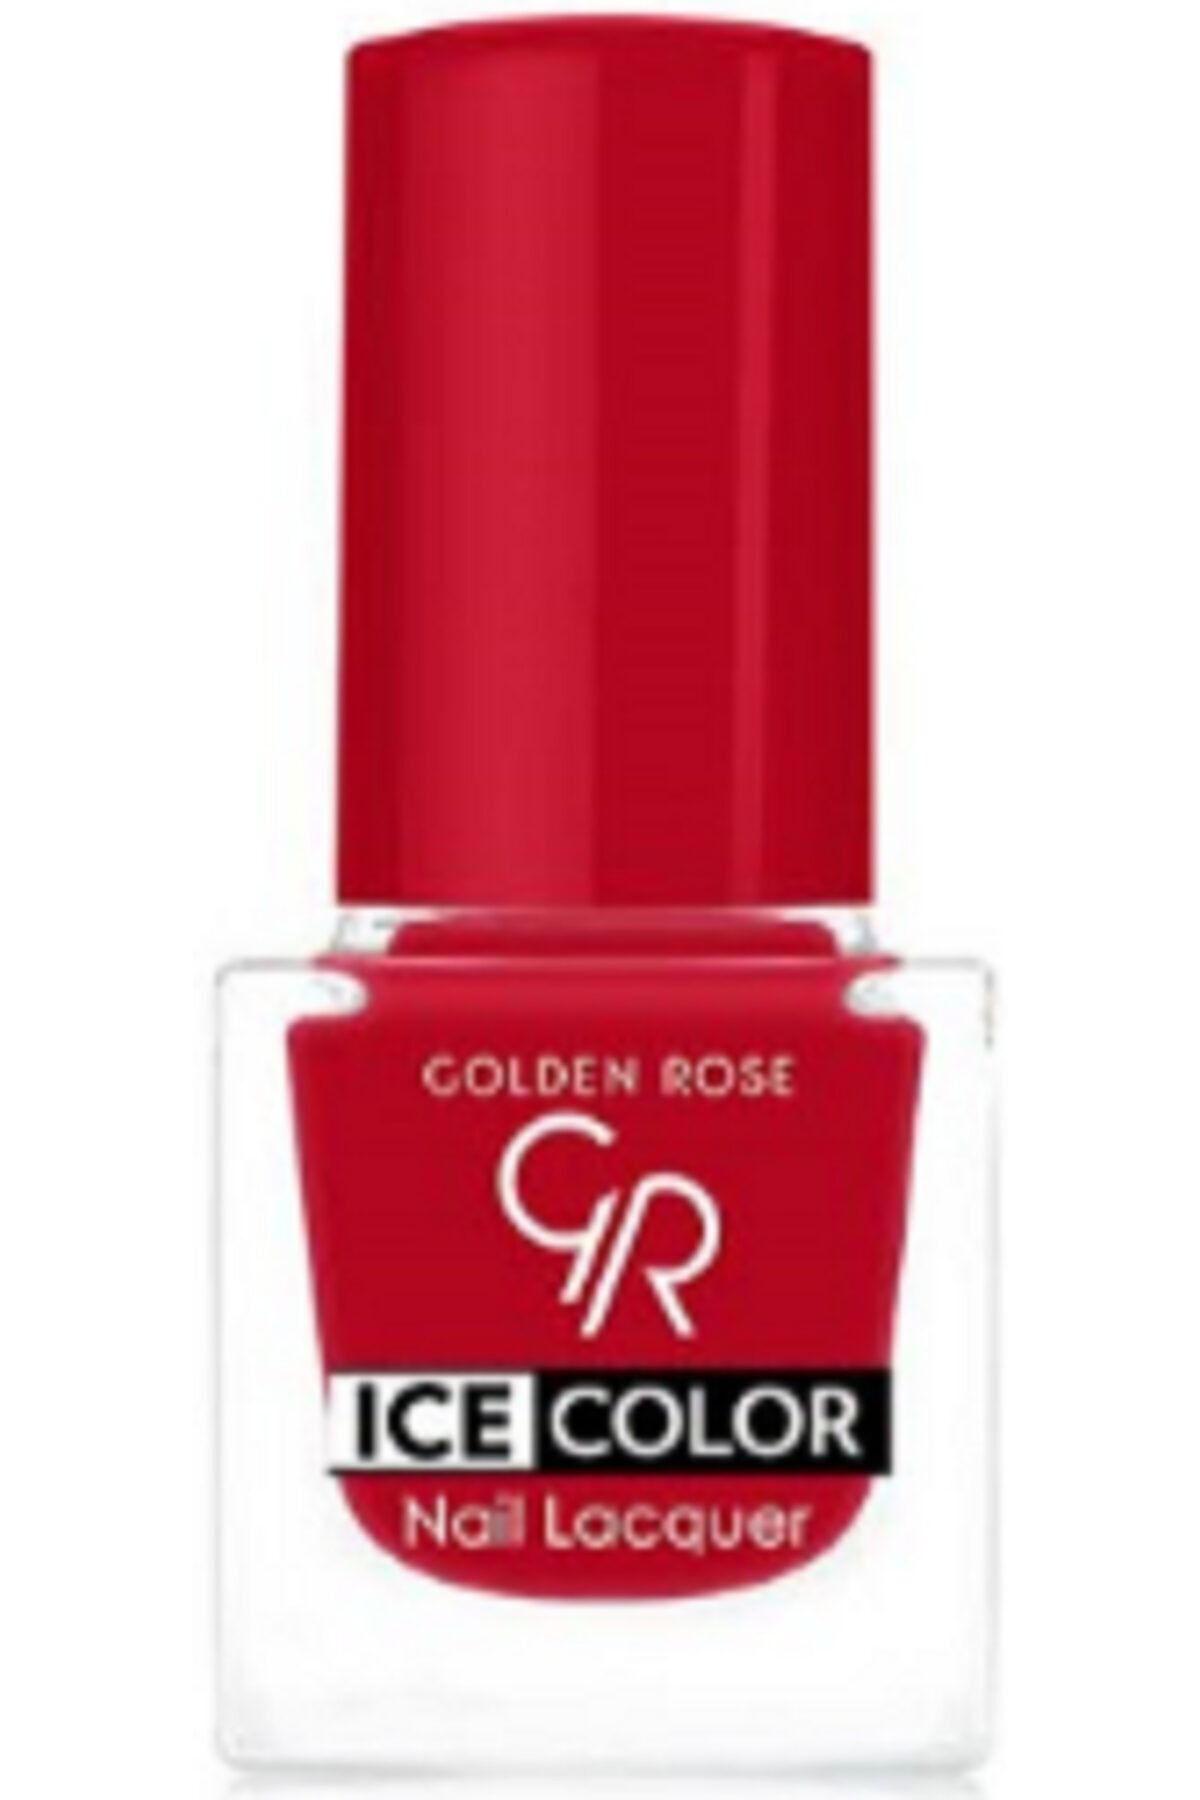 لاک ناخن یخی آیس چیک ICE شماره 186 رنگ سرخابی گلدن رز Golden Rose